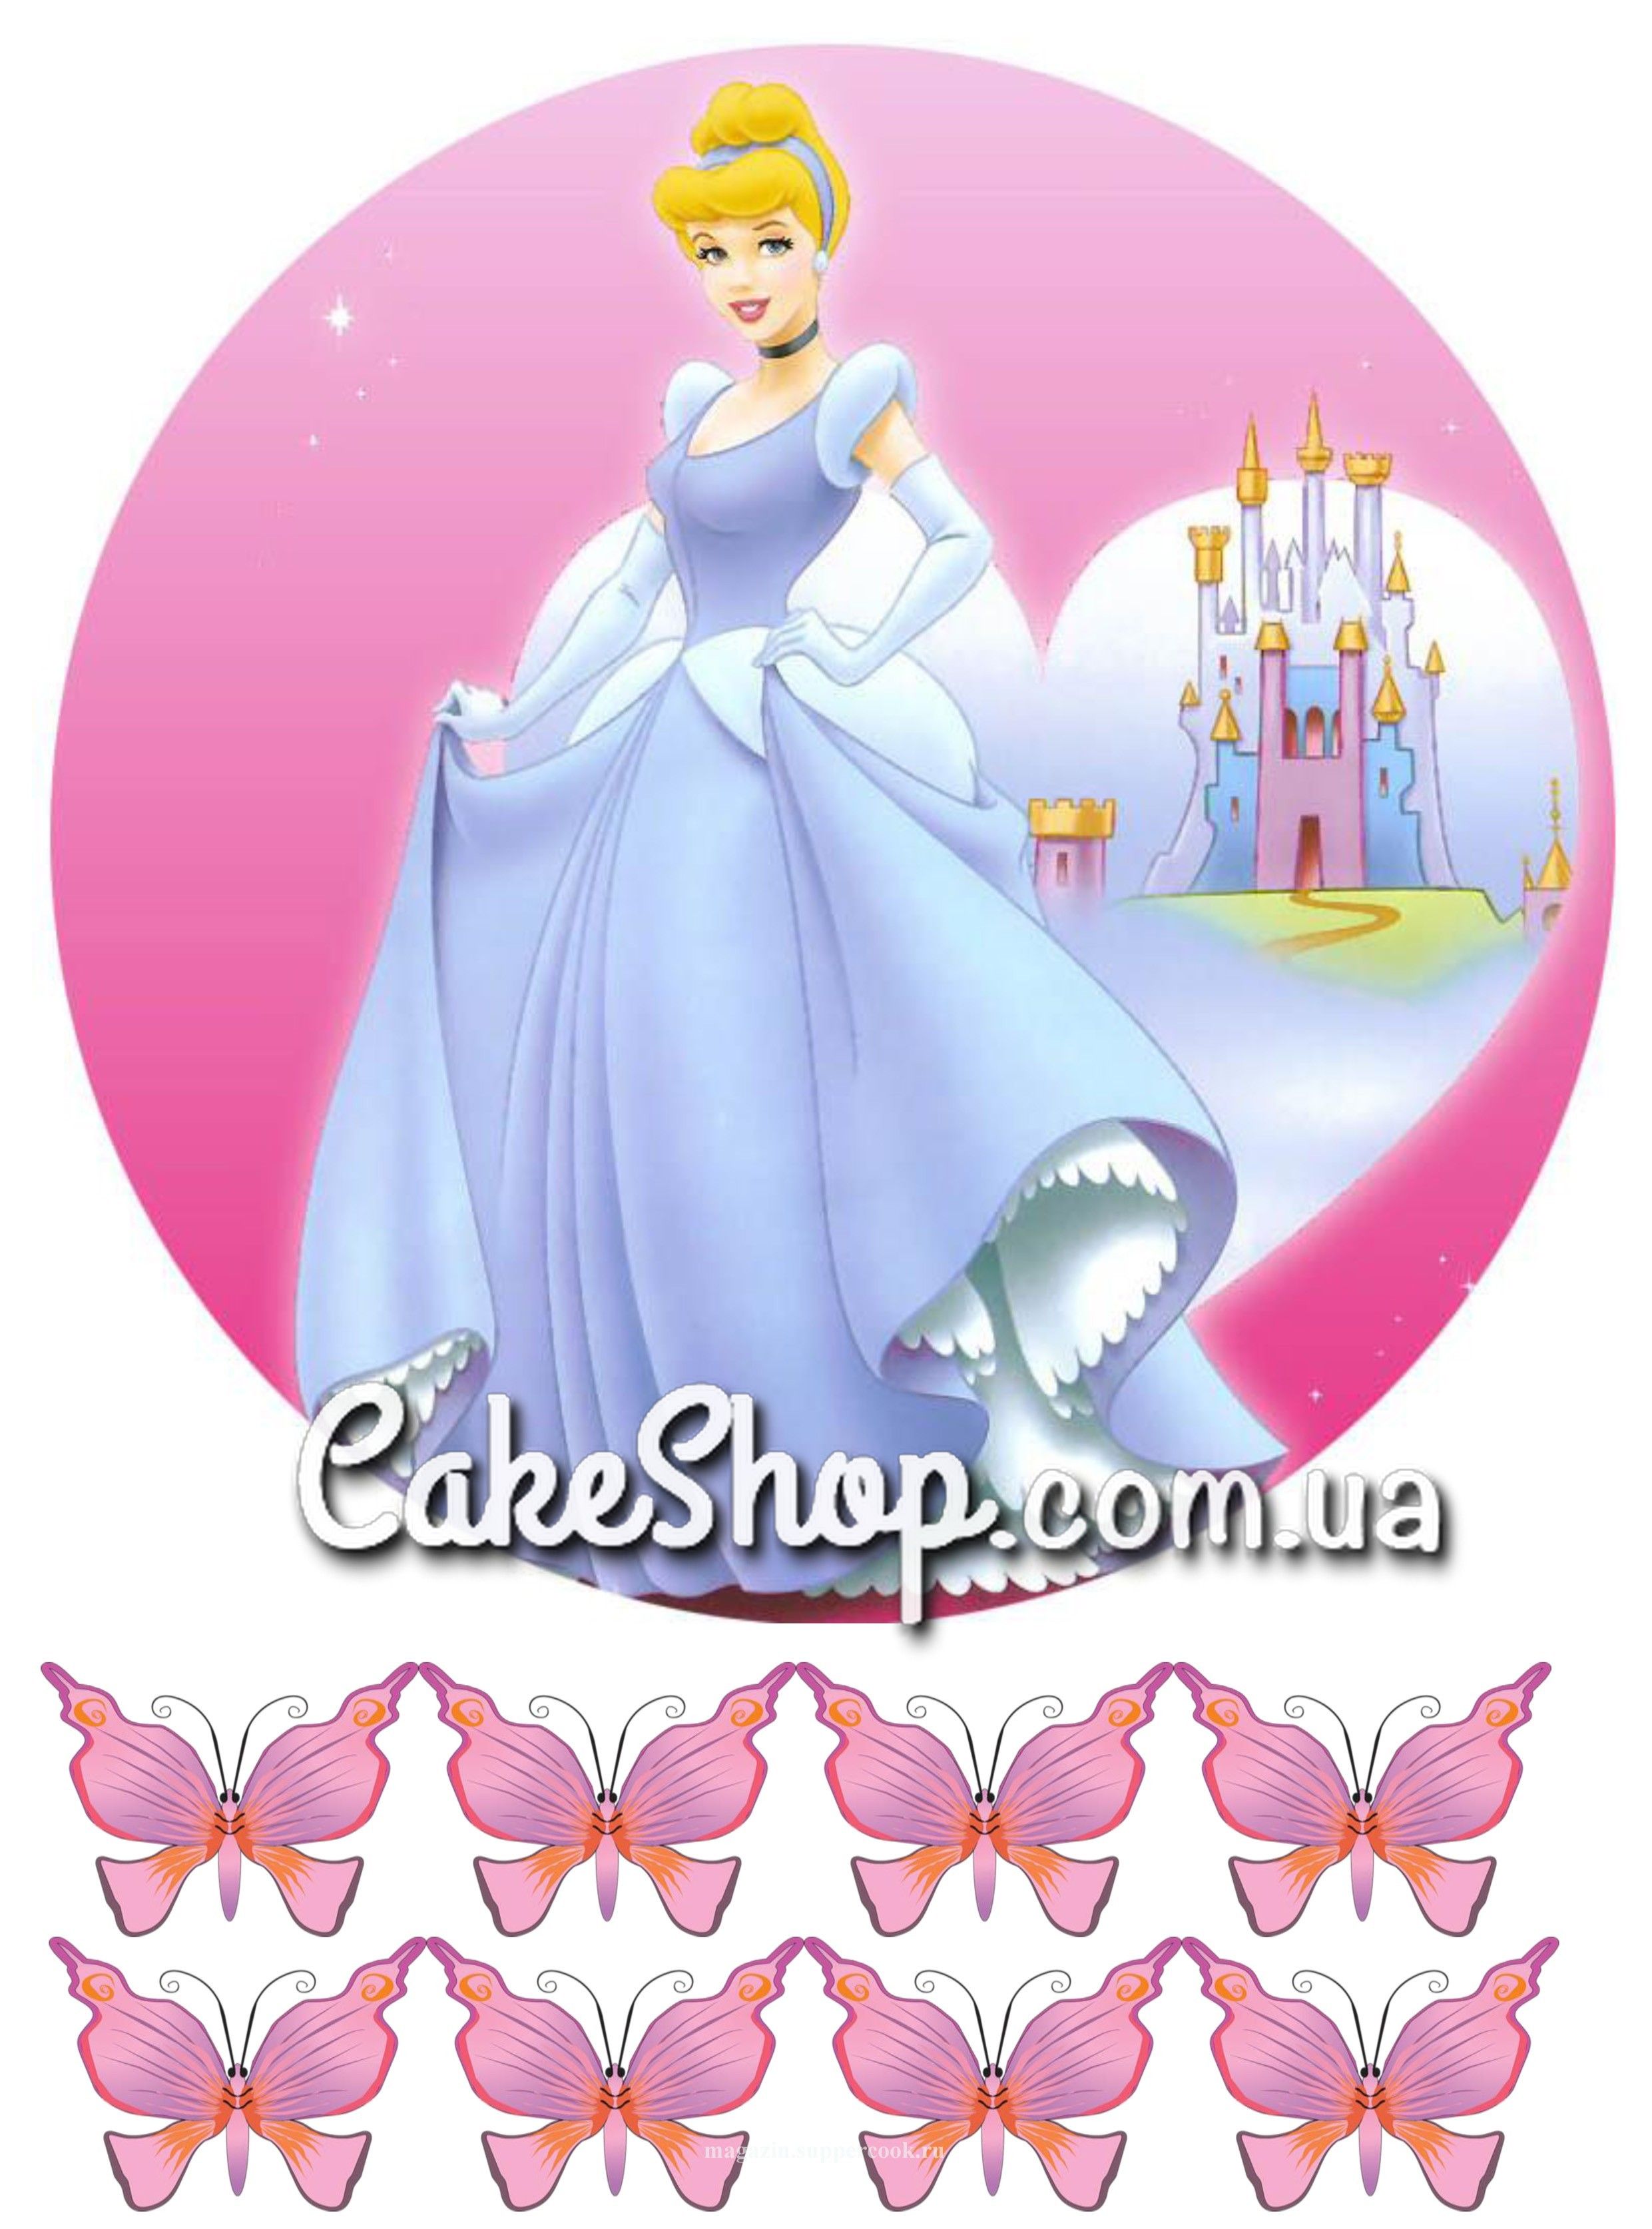 ⋗ Сахарная картинка Принцесса Золушка купить в Украине ➛ CakeShop.com.ua, фото